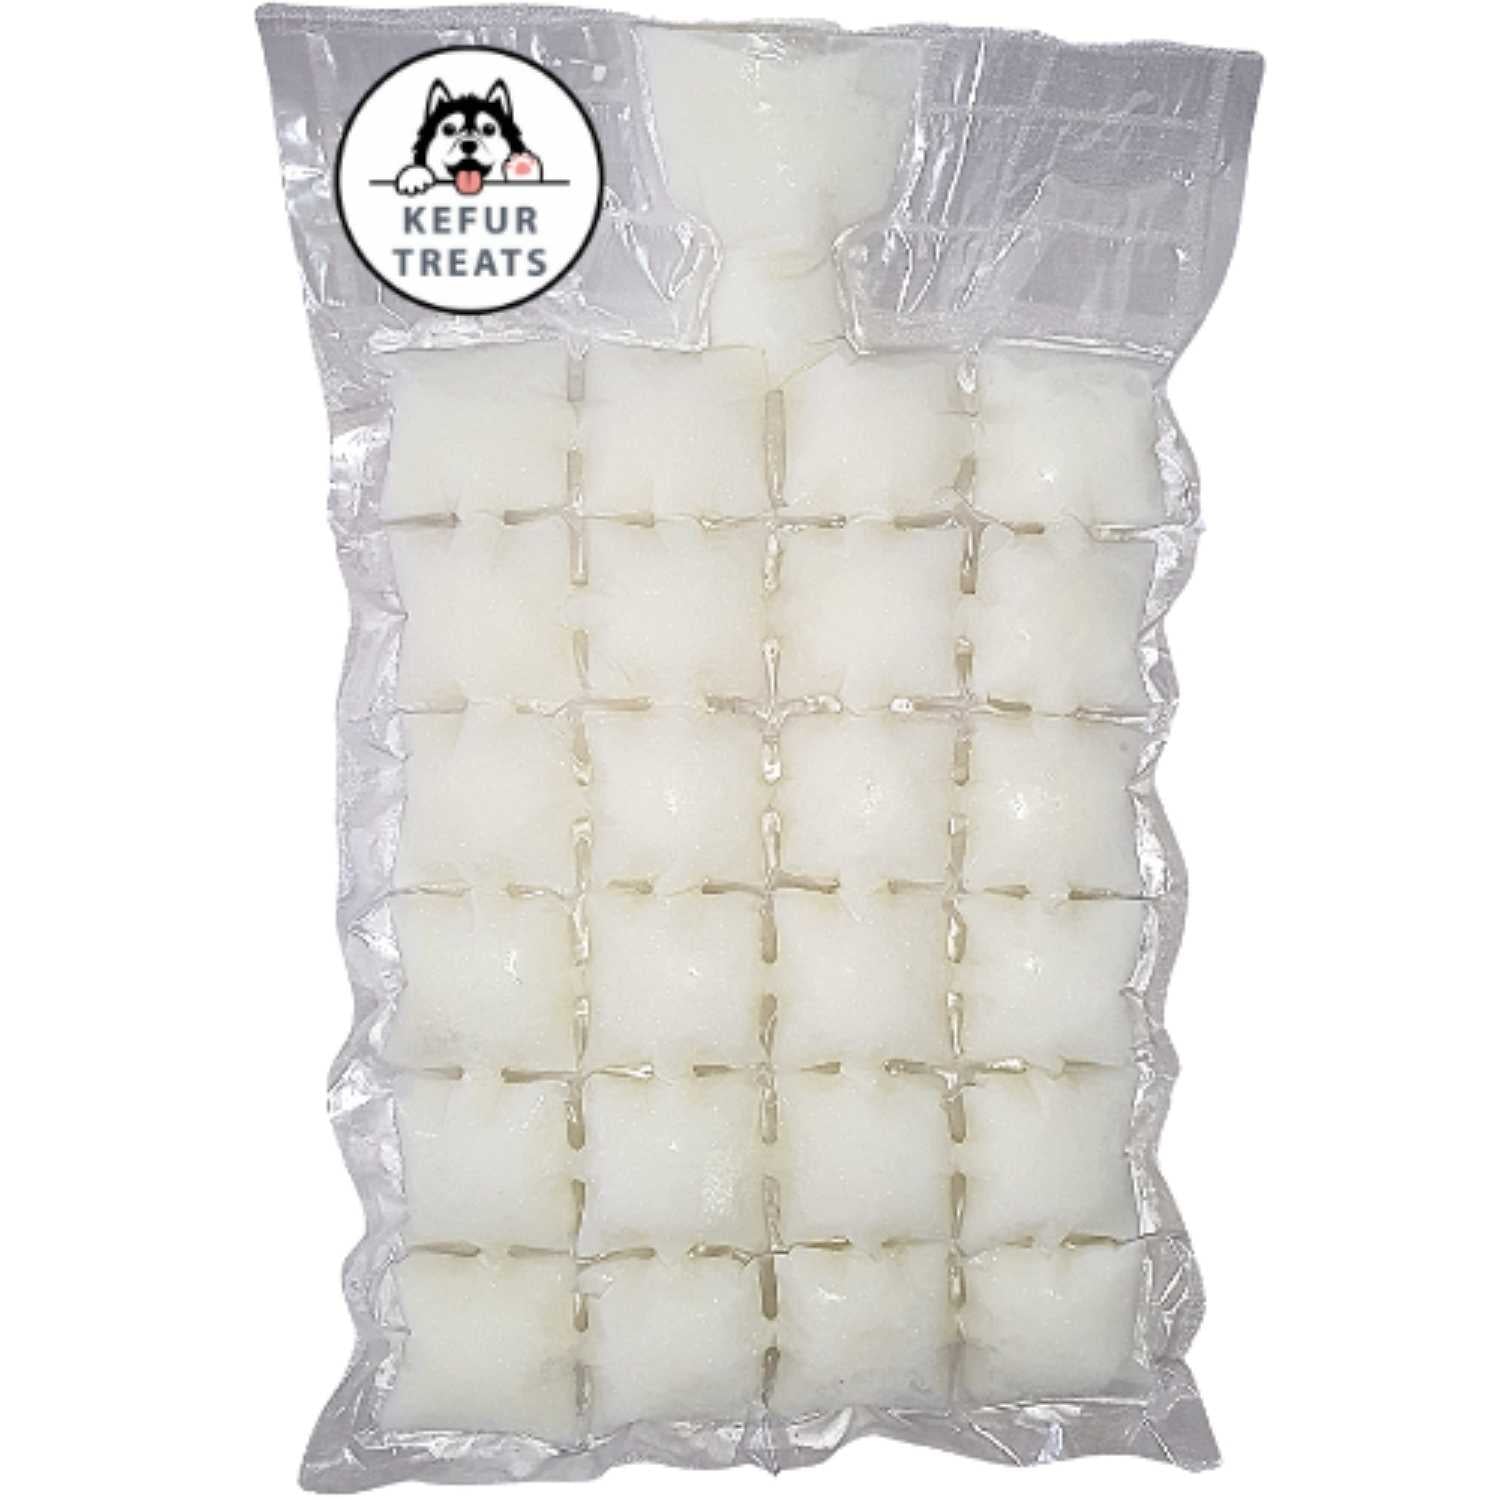 Milk Kefir Kefur Treats Single Frozen Pack 24 cubes Original